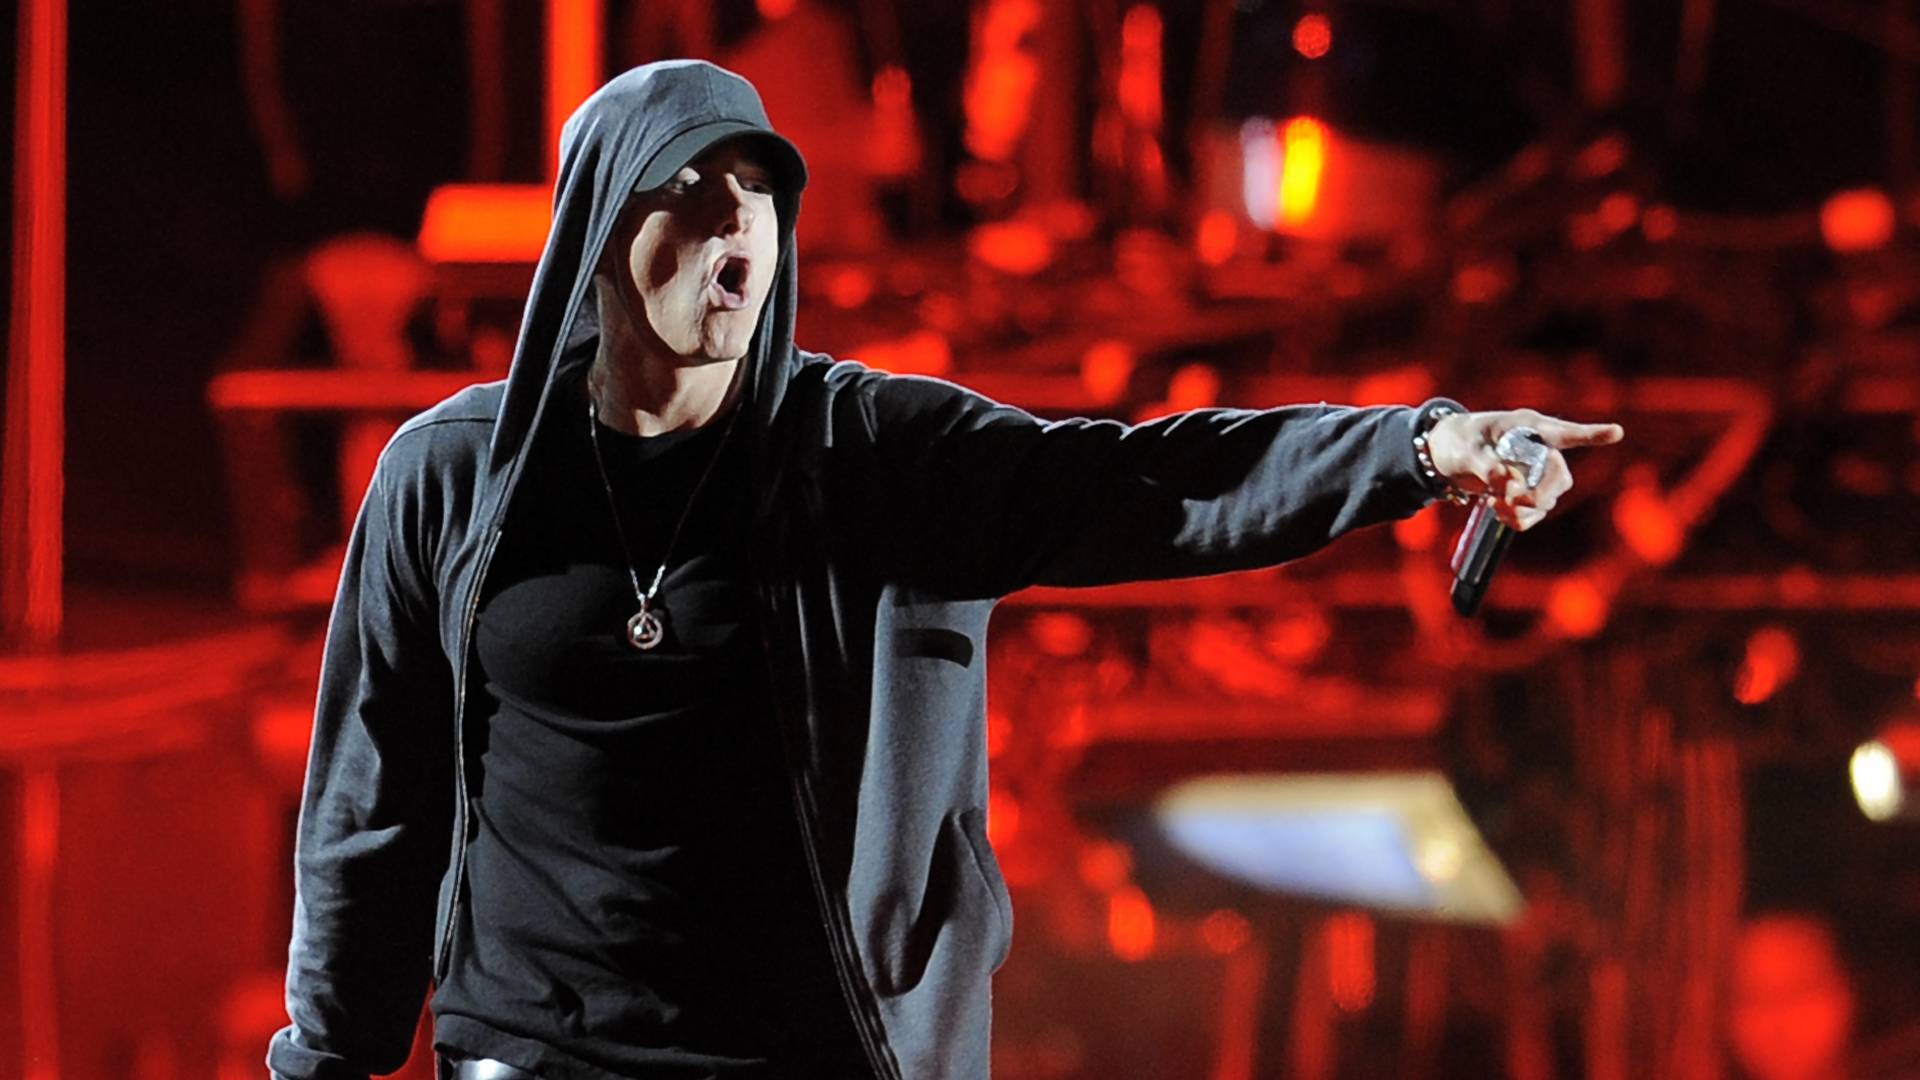 Eminem prekvapil fanúšikov novým albumom. Vyzýva Američanov, aby volili a zmenili krajinu